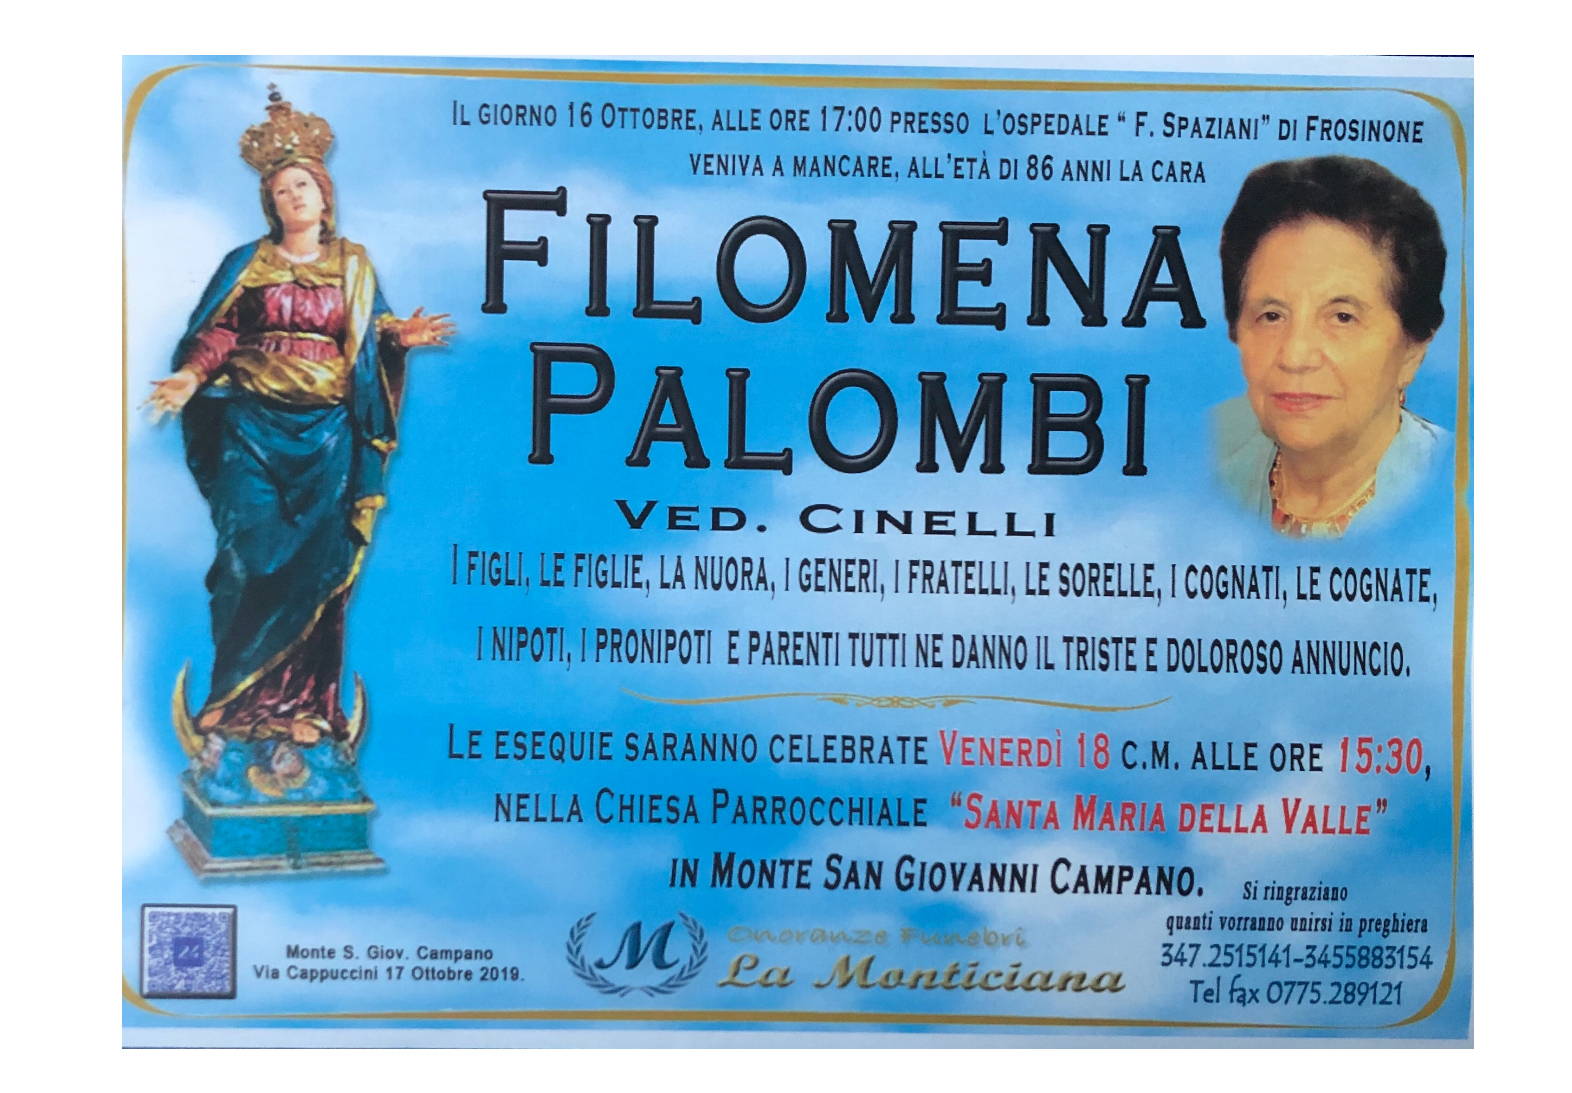 Filomena Palombi